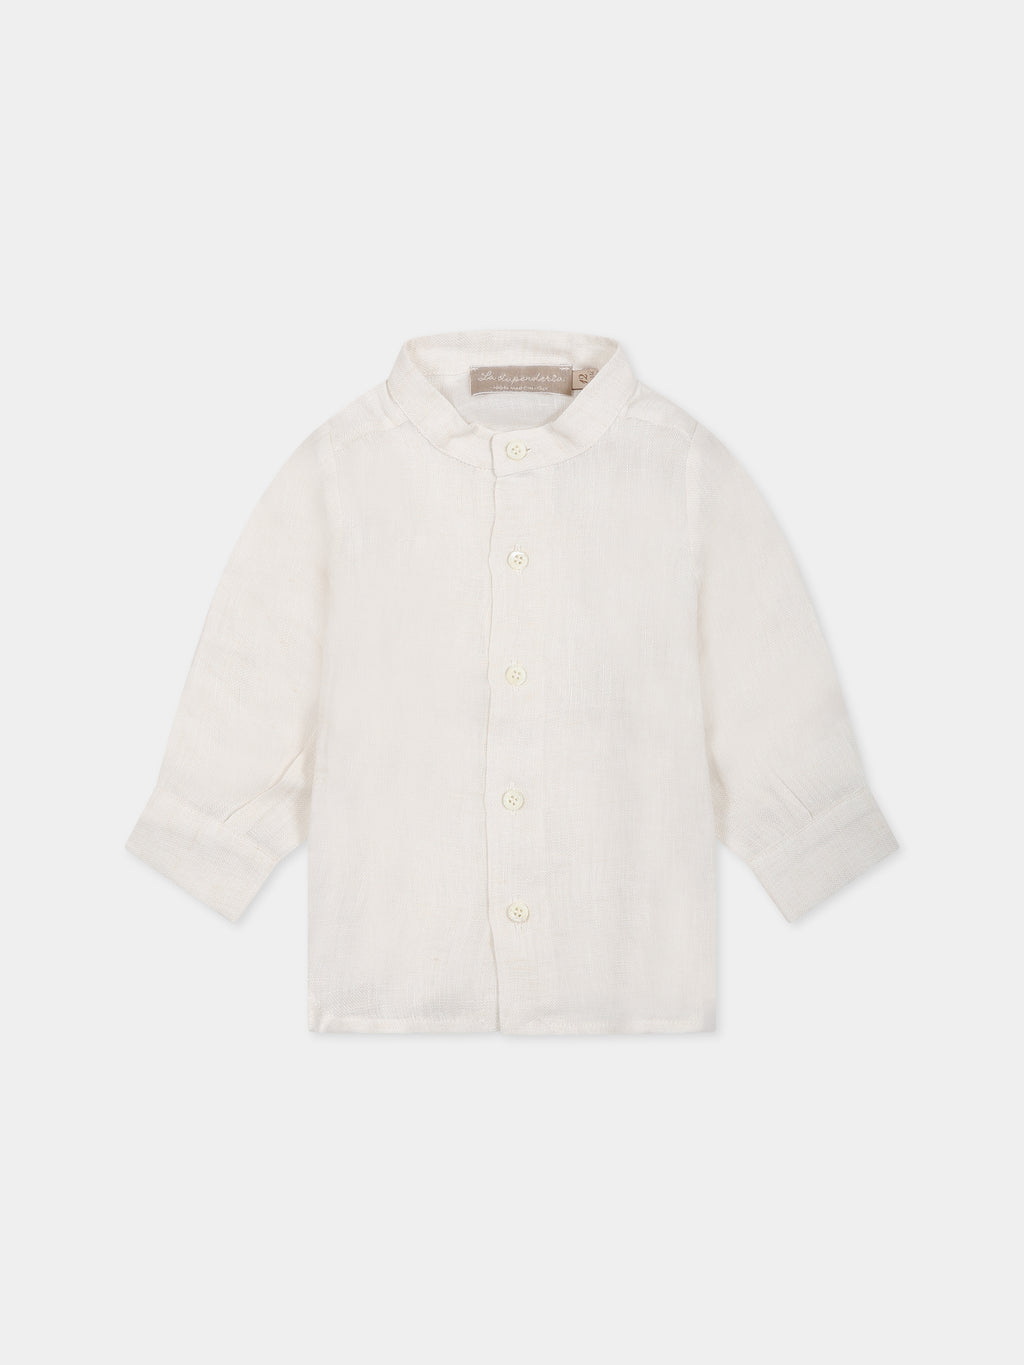 Chemise blanche pour bébé garçon